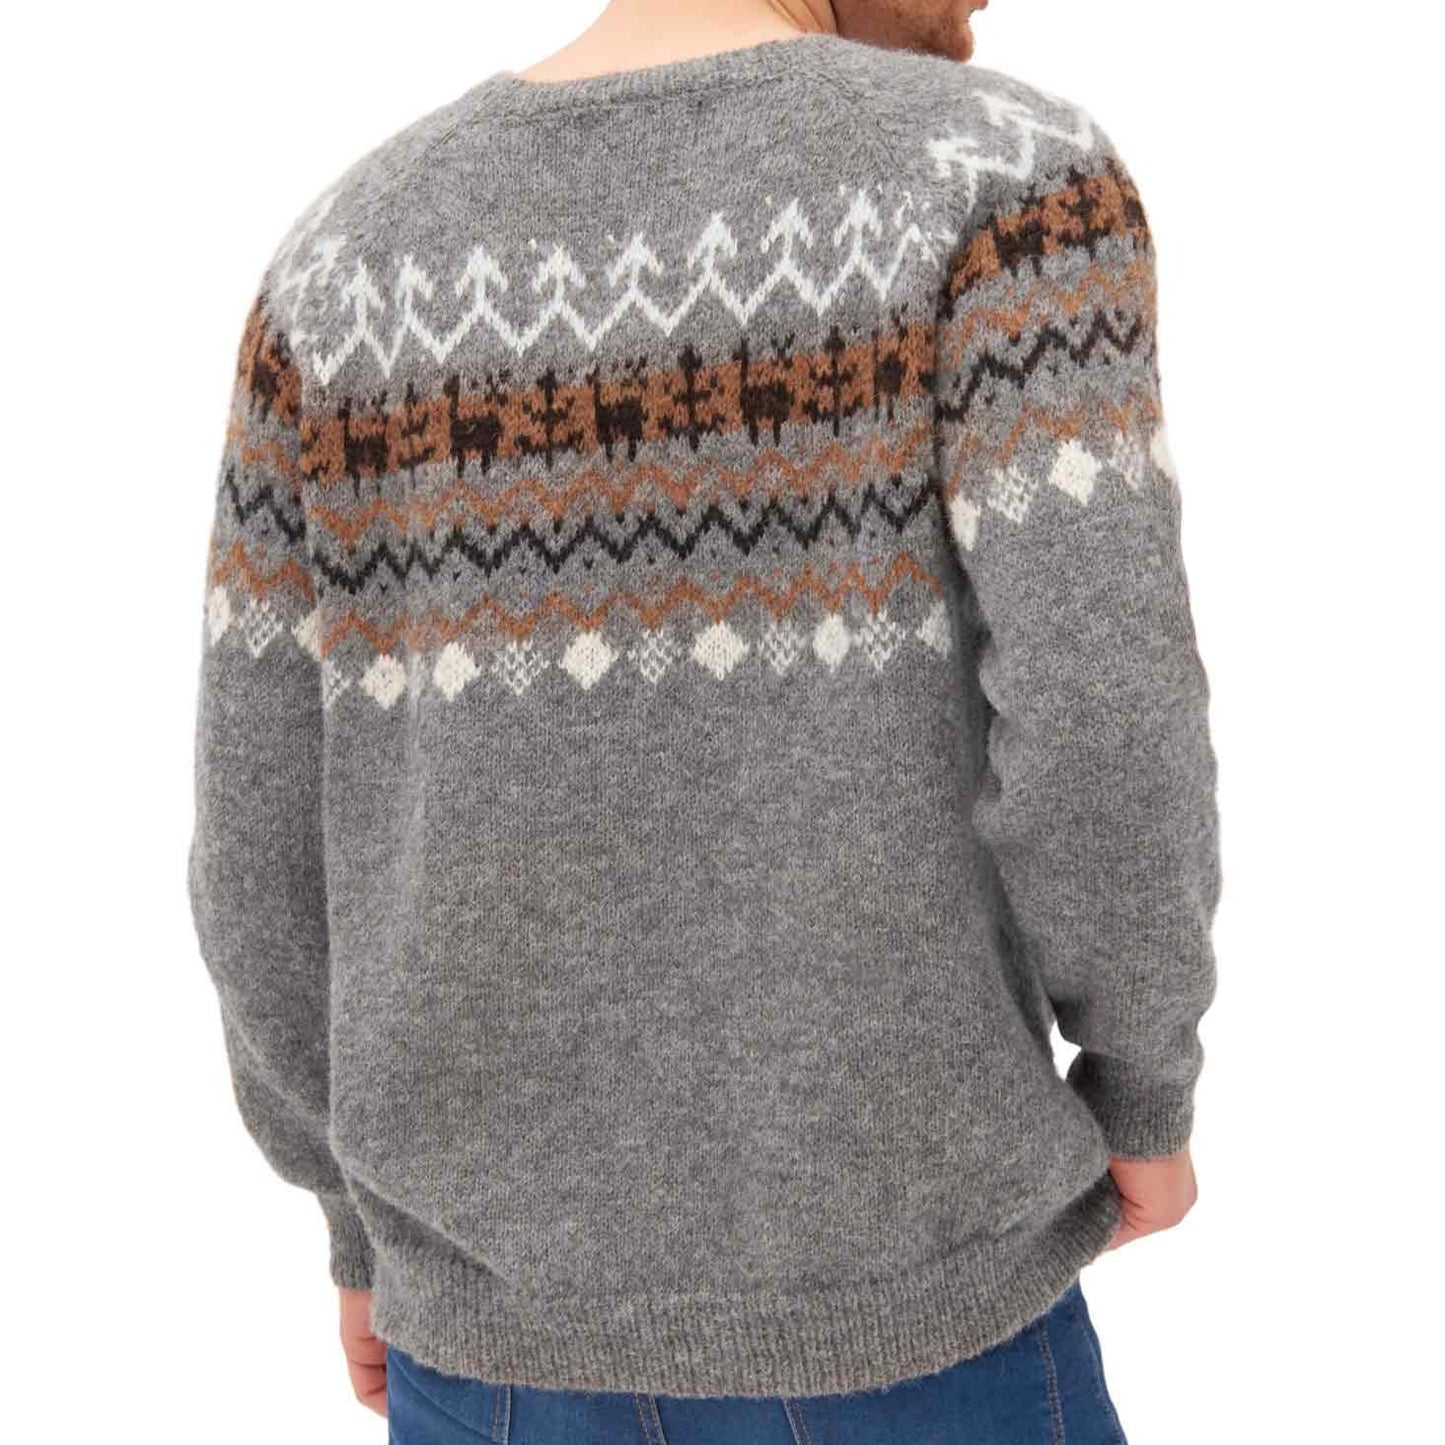 Ungefärbter Alpaka-Pullover für Herren mit rustikalem Strickmuster